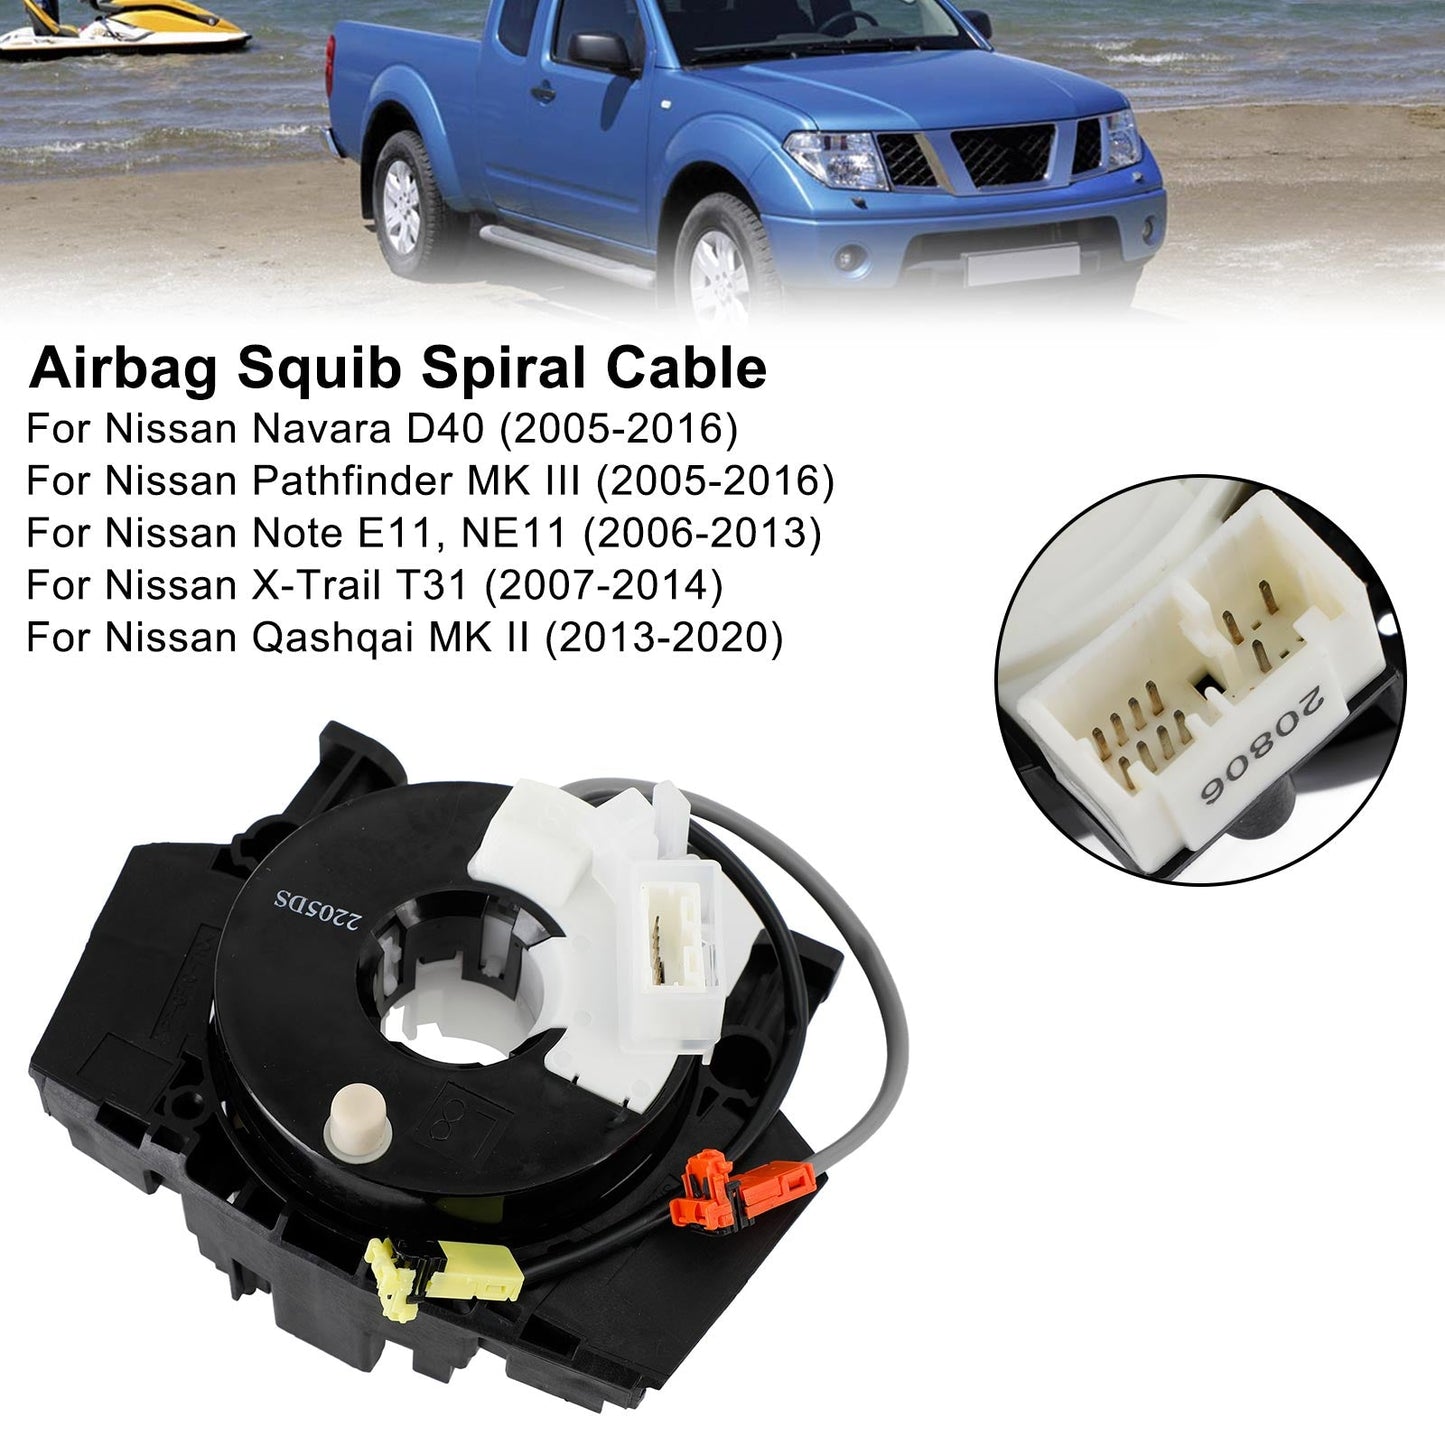 Airbag Squib Spiral Cable For Infiniti FX45 25567-AC725, B5567-CC00A, B5567-CC00E